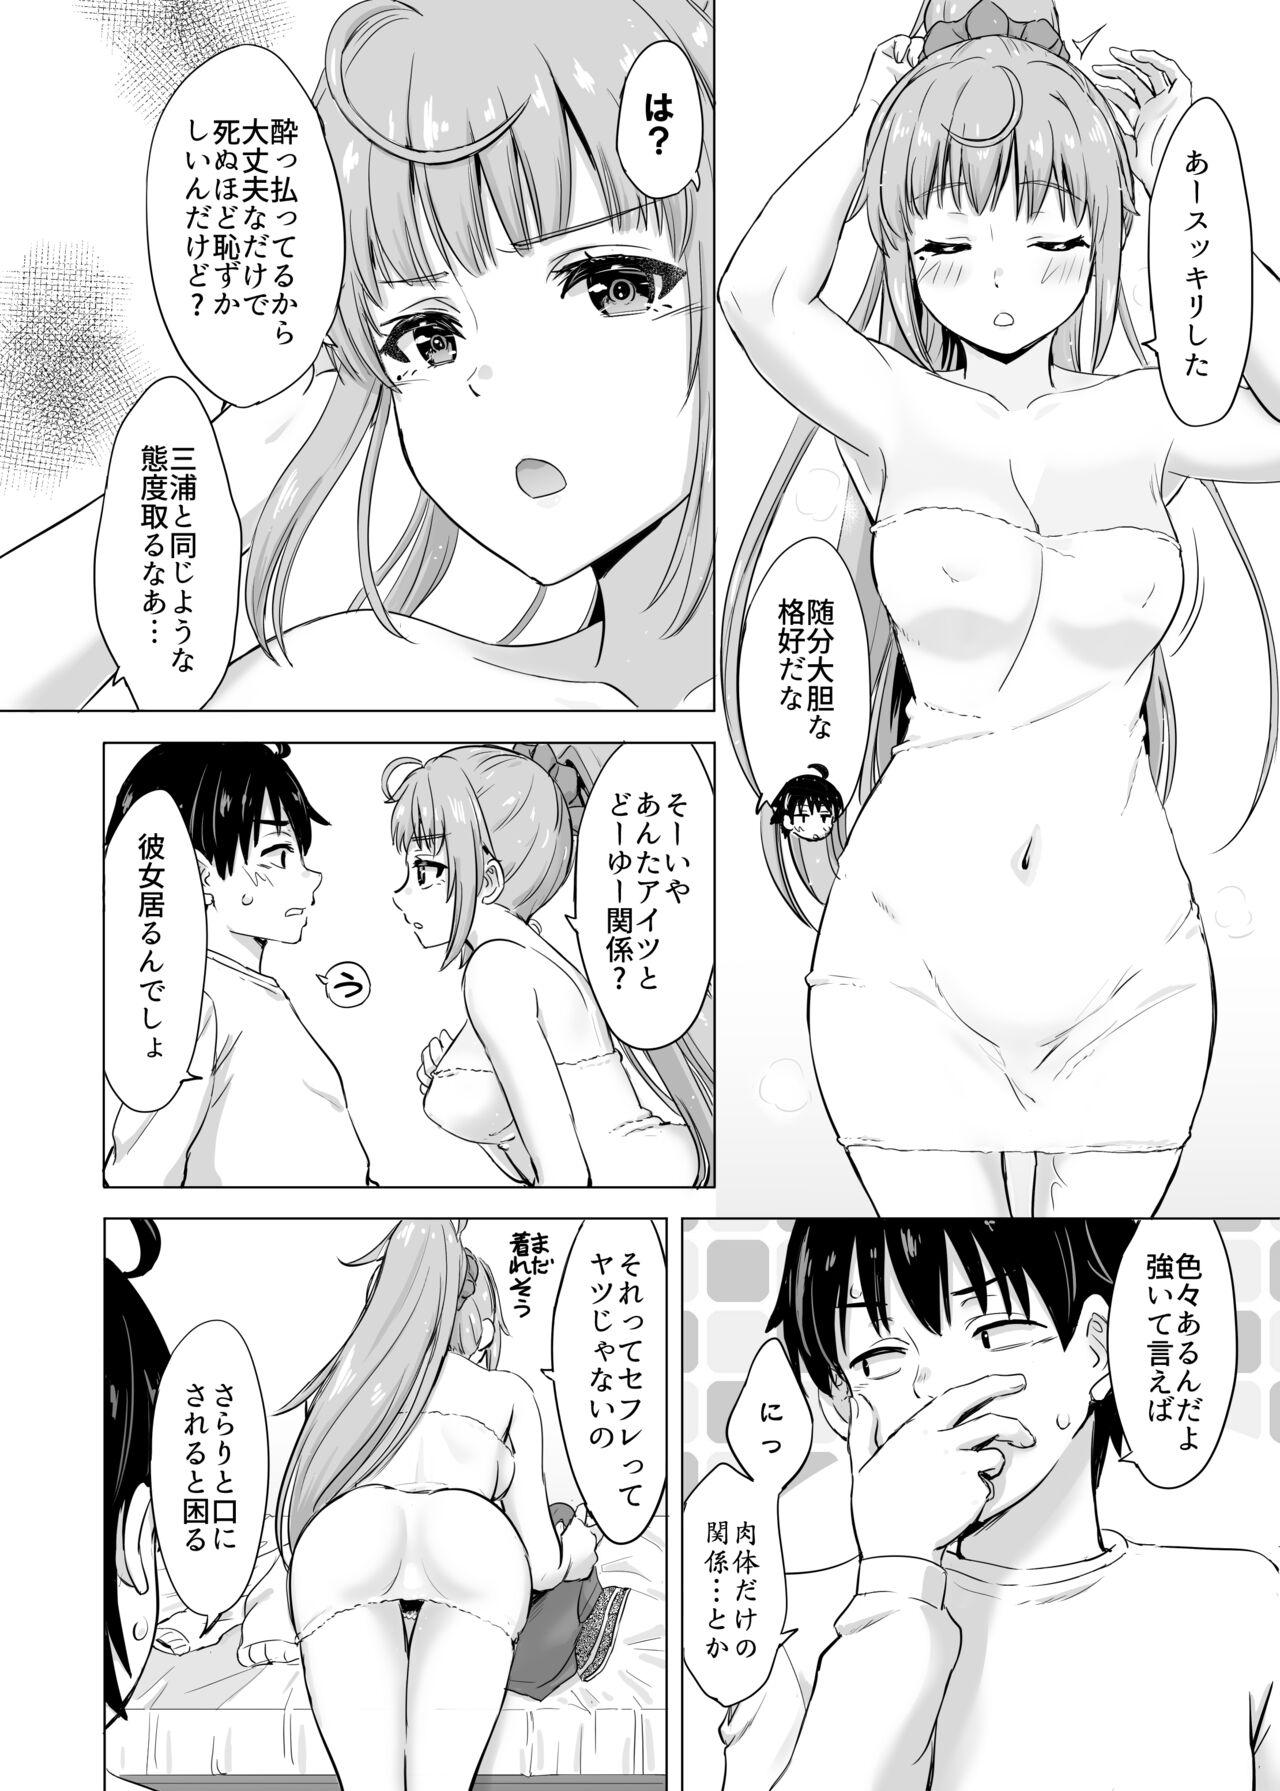 Gay Medical あーしさんサキサキ漫画 - Yahari ore no seishun love come wa machigatteiru Gay Pov - Page 7